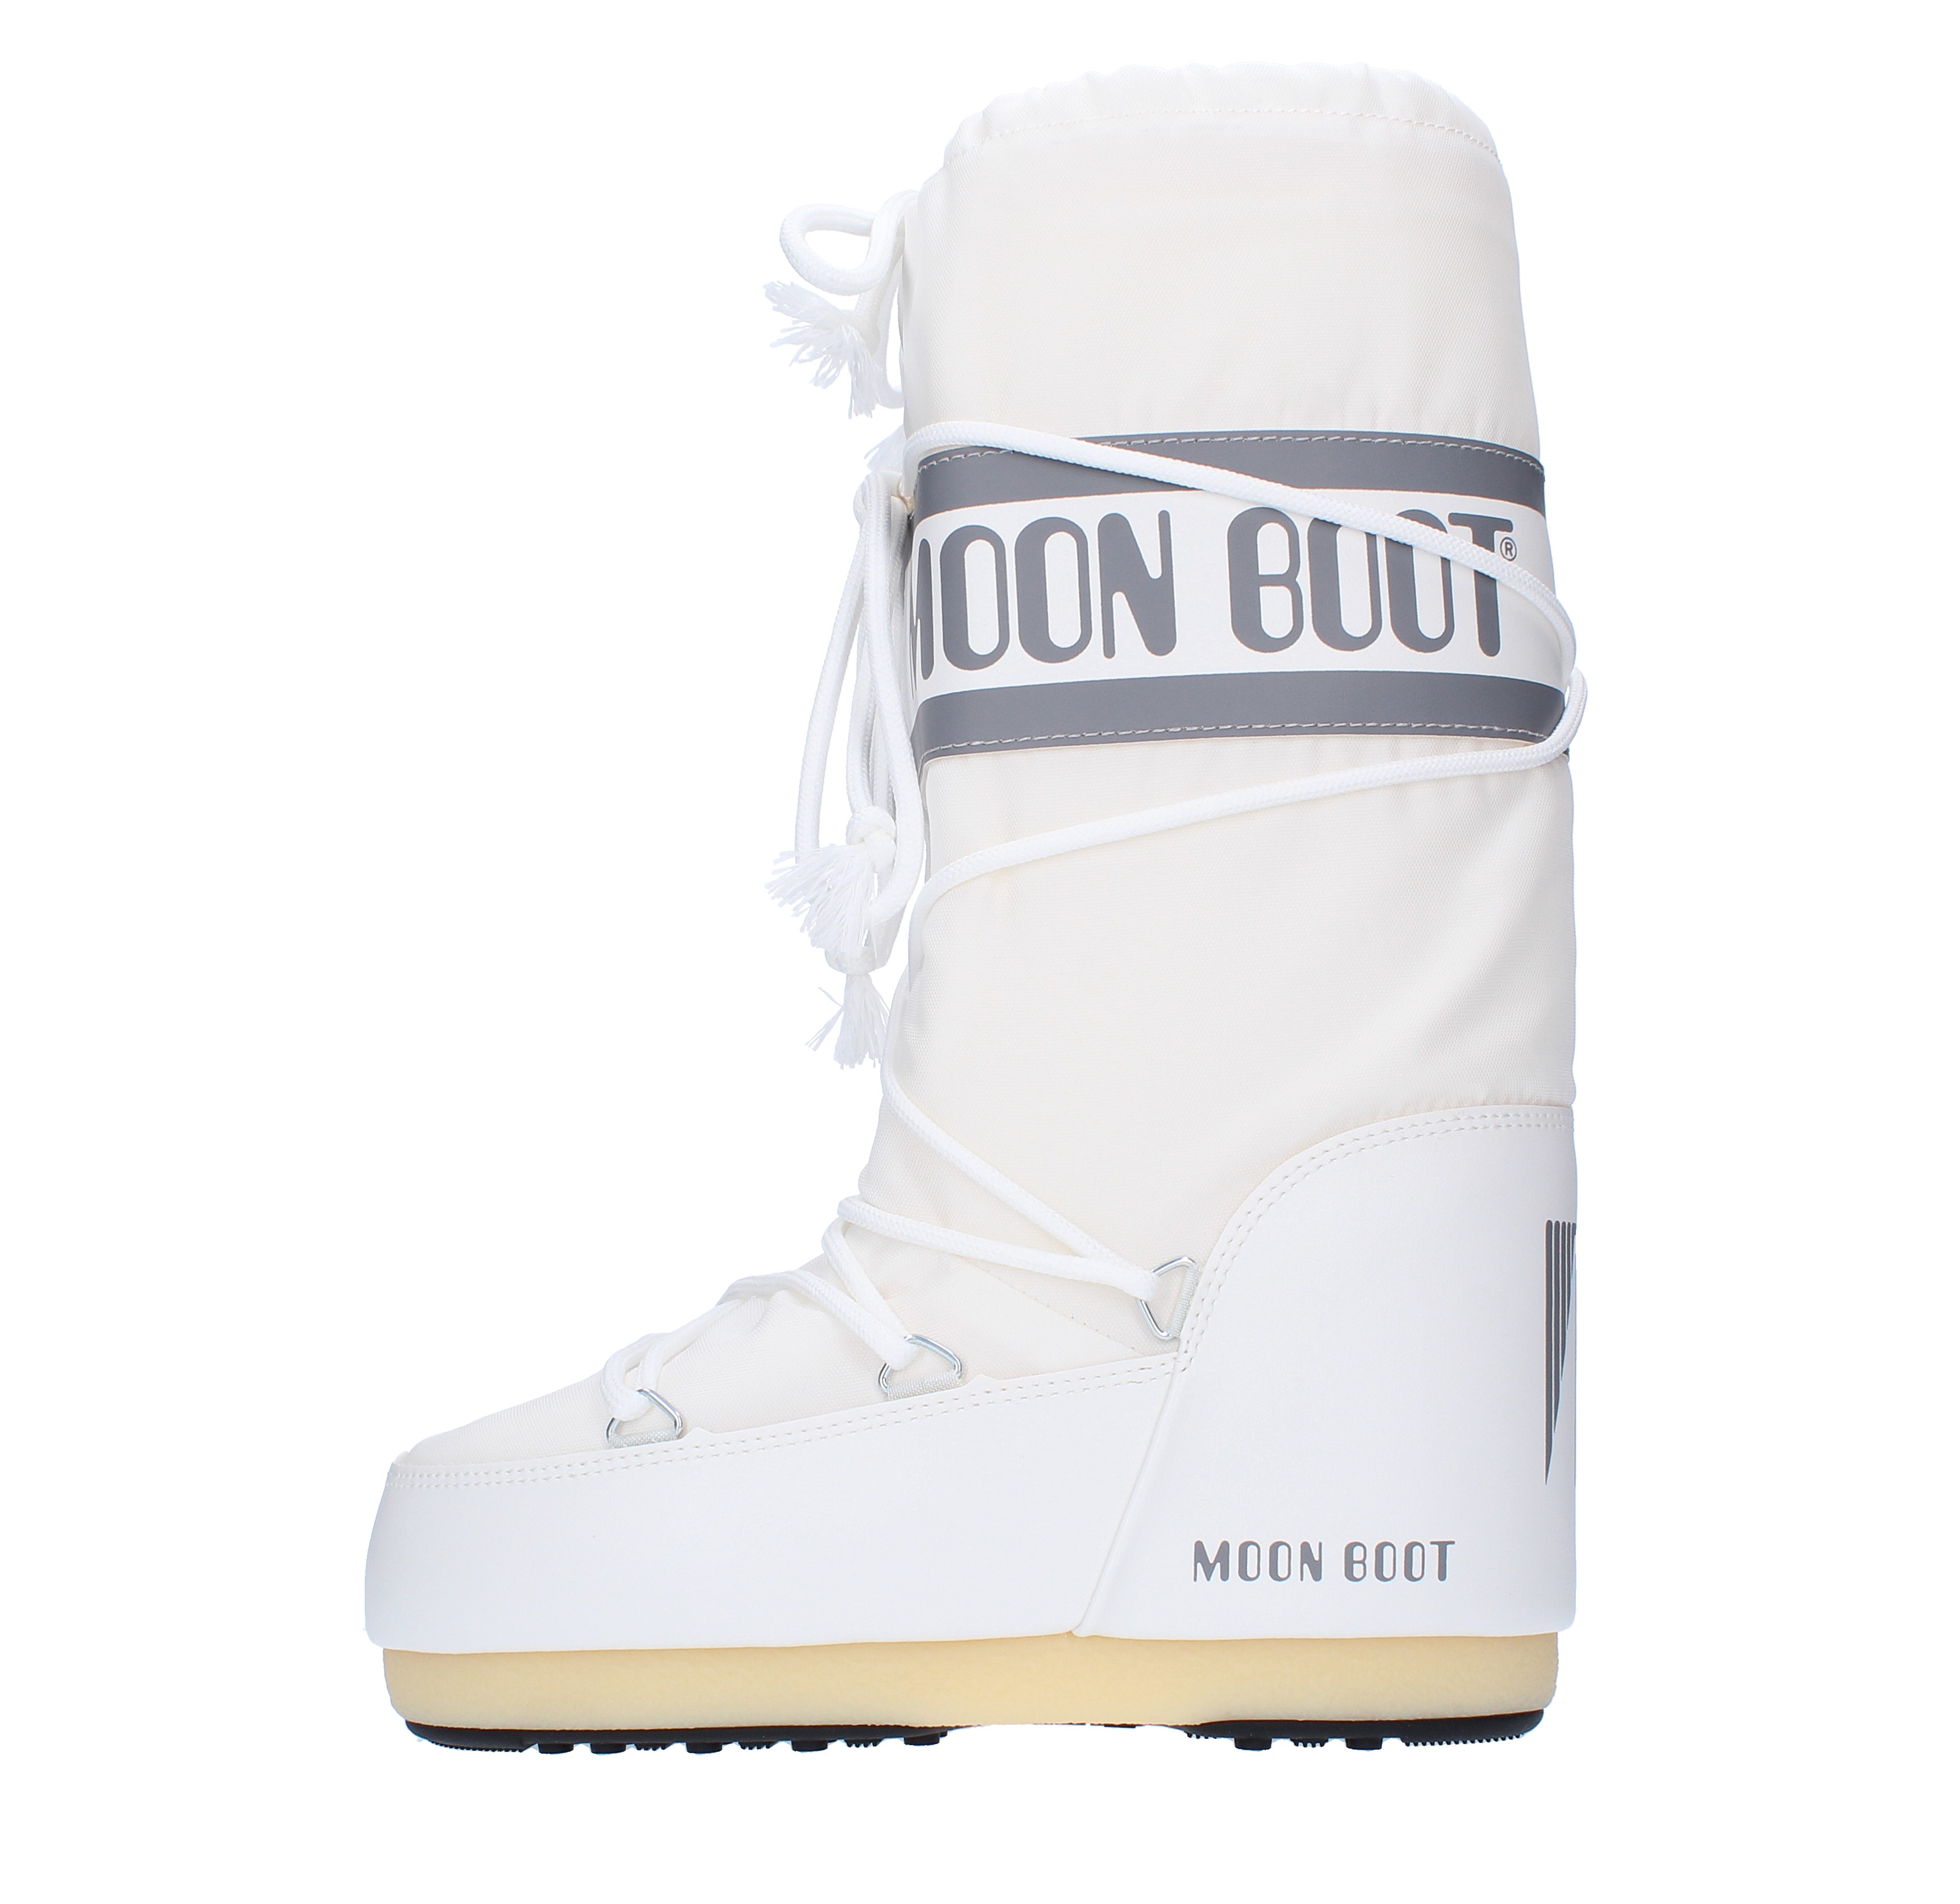 Stivali da neve modello ICON NYLON MOON BOOT in nylon tecnico  idrorepellente - MOON BOOT - Ginevra calzature